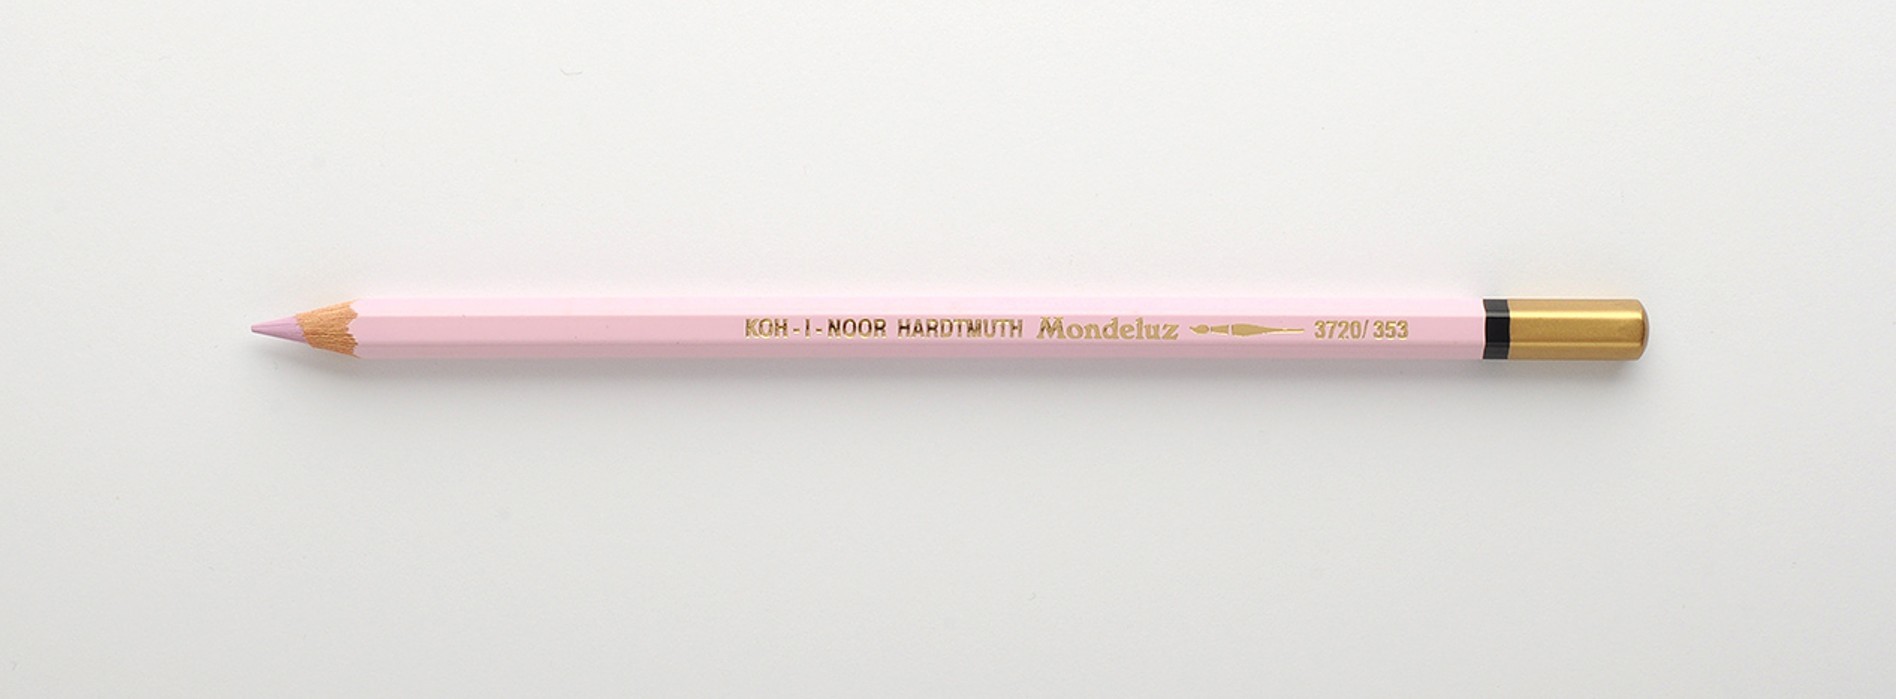 Creion colorat Mondeluz Aquarell KOH-I-NOOR, roz amarant